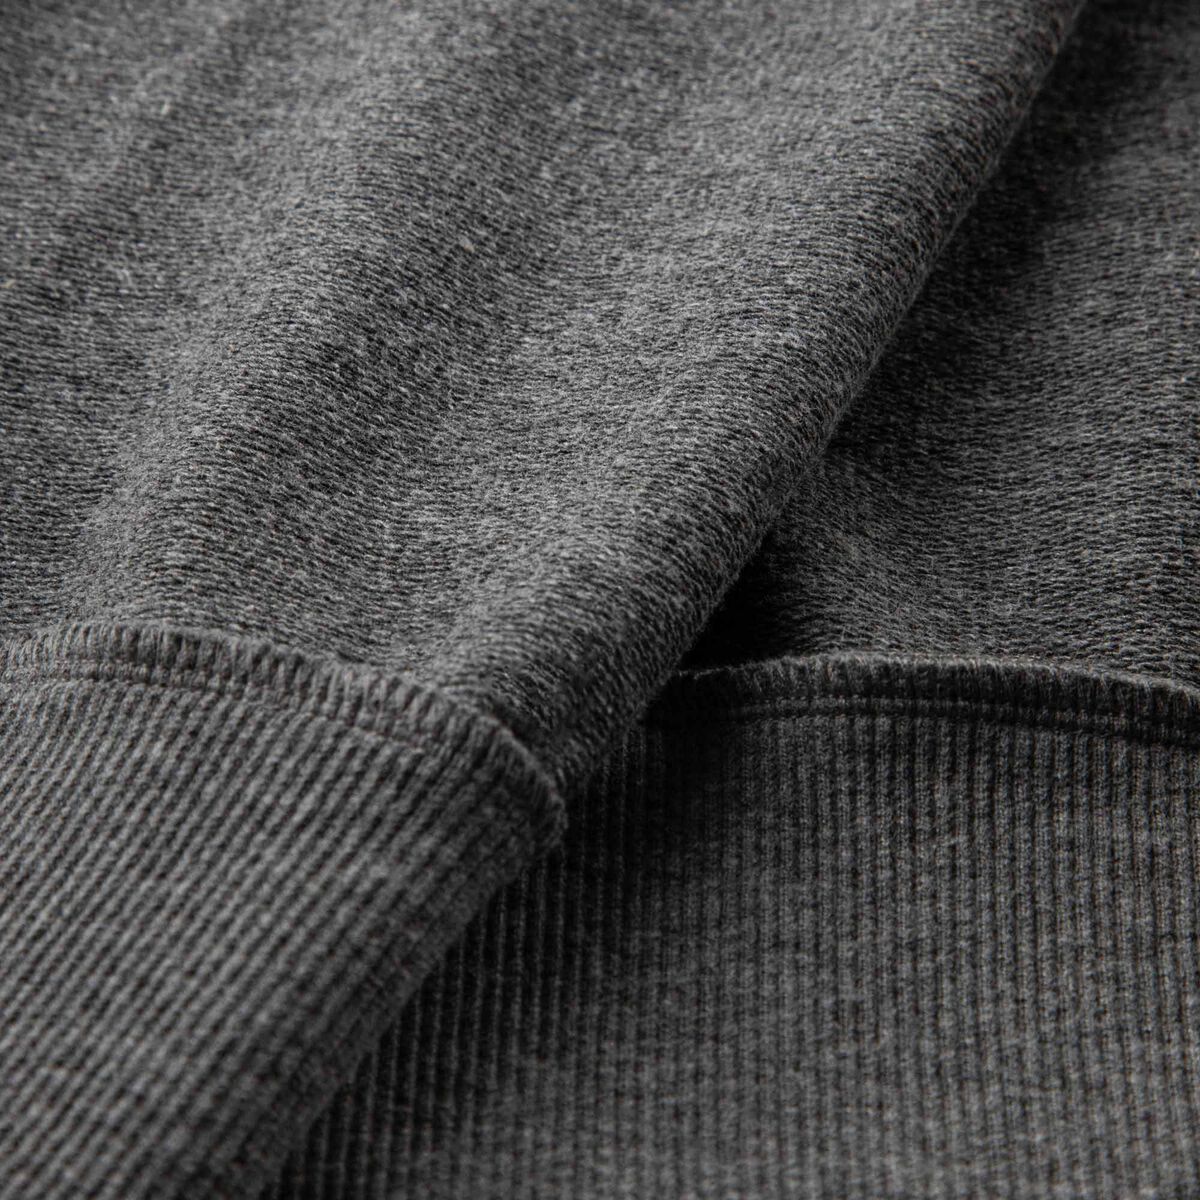 Rossignol Pantalon de survêtement en coton logo homme grey